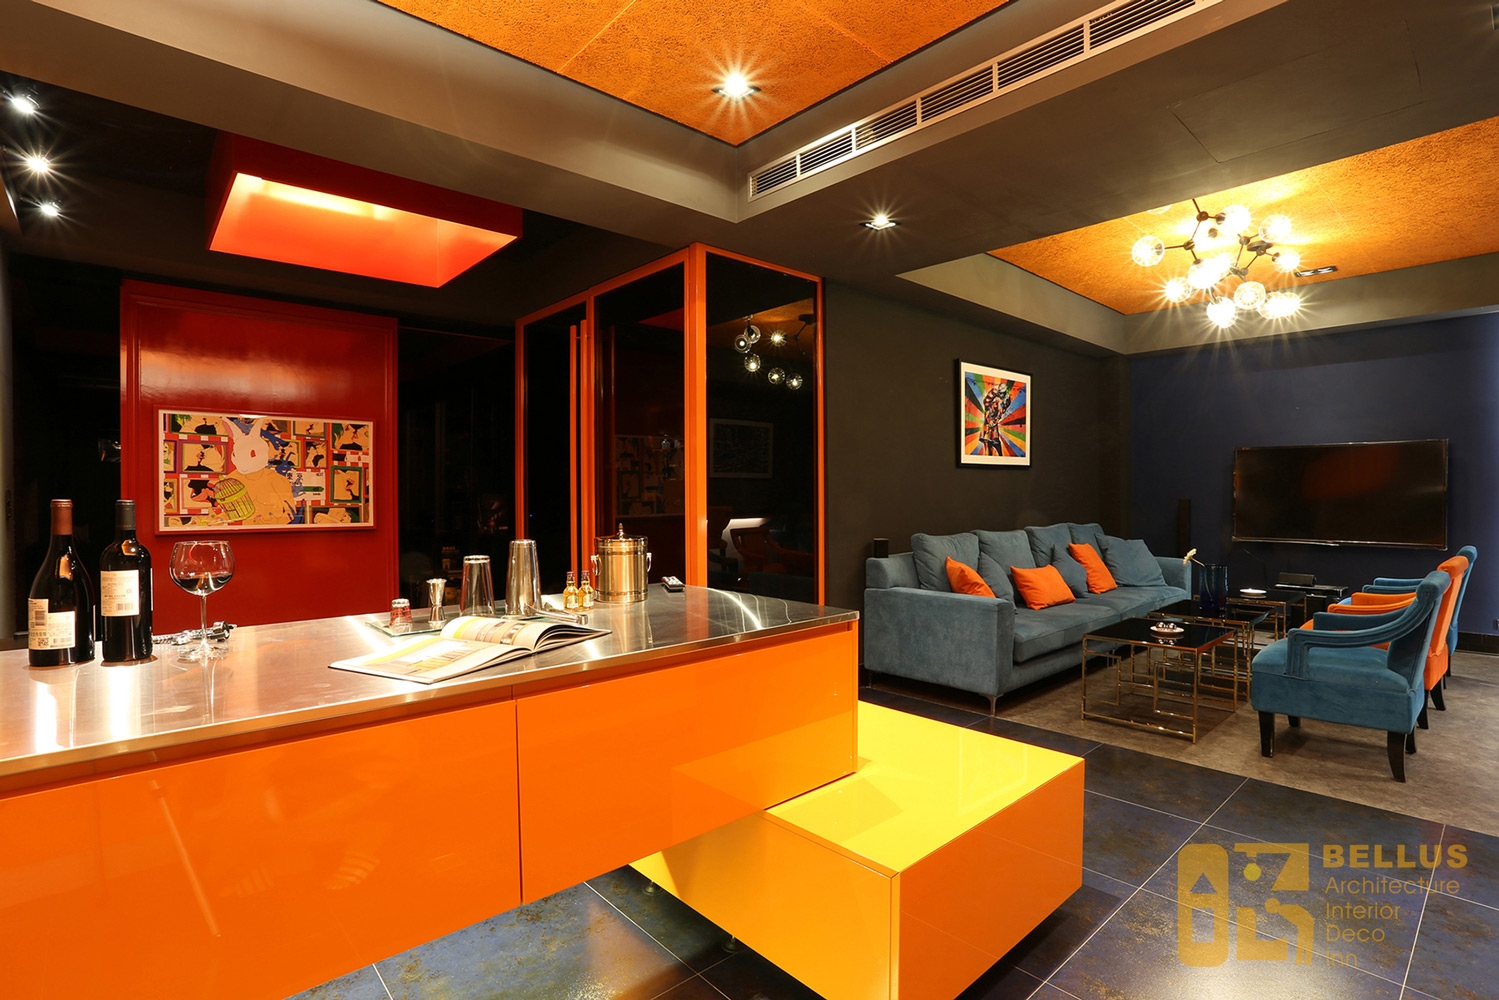 中西融合開放式的客餐區,以橘色調為主搭配藍色橘色沙發椅子,對比且和諧